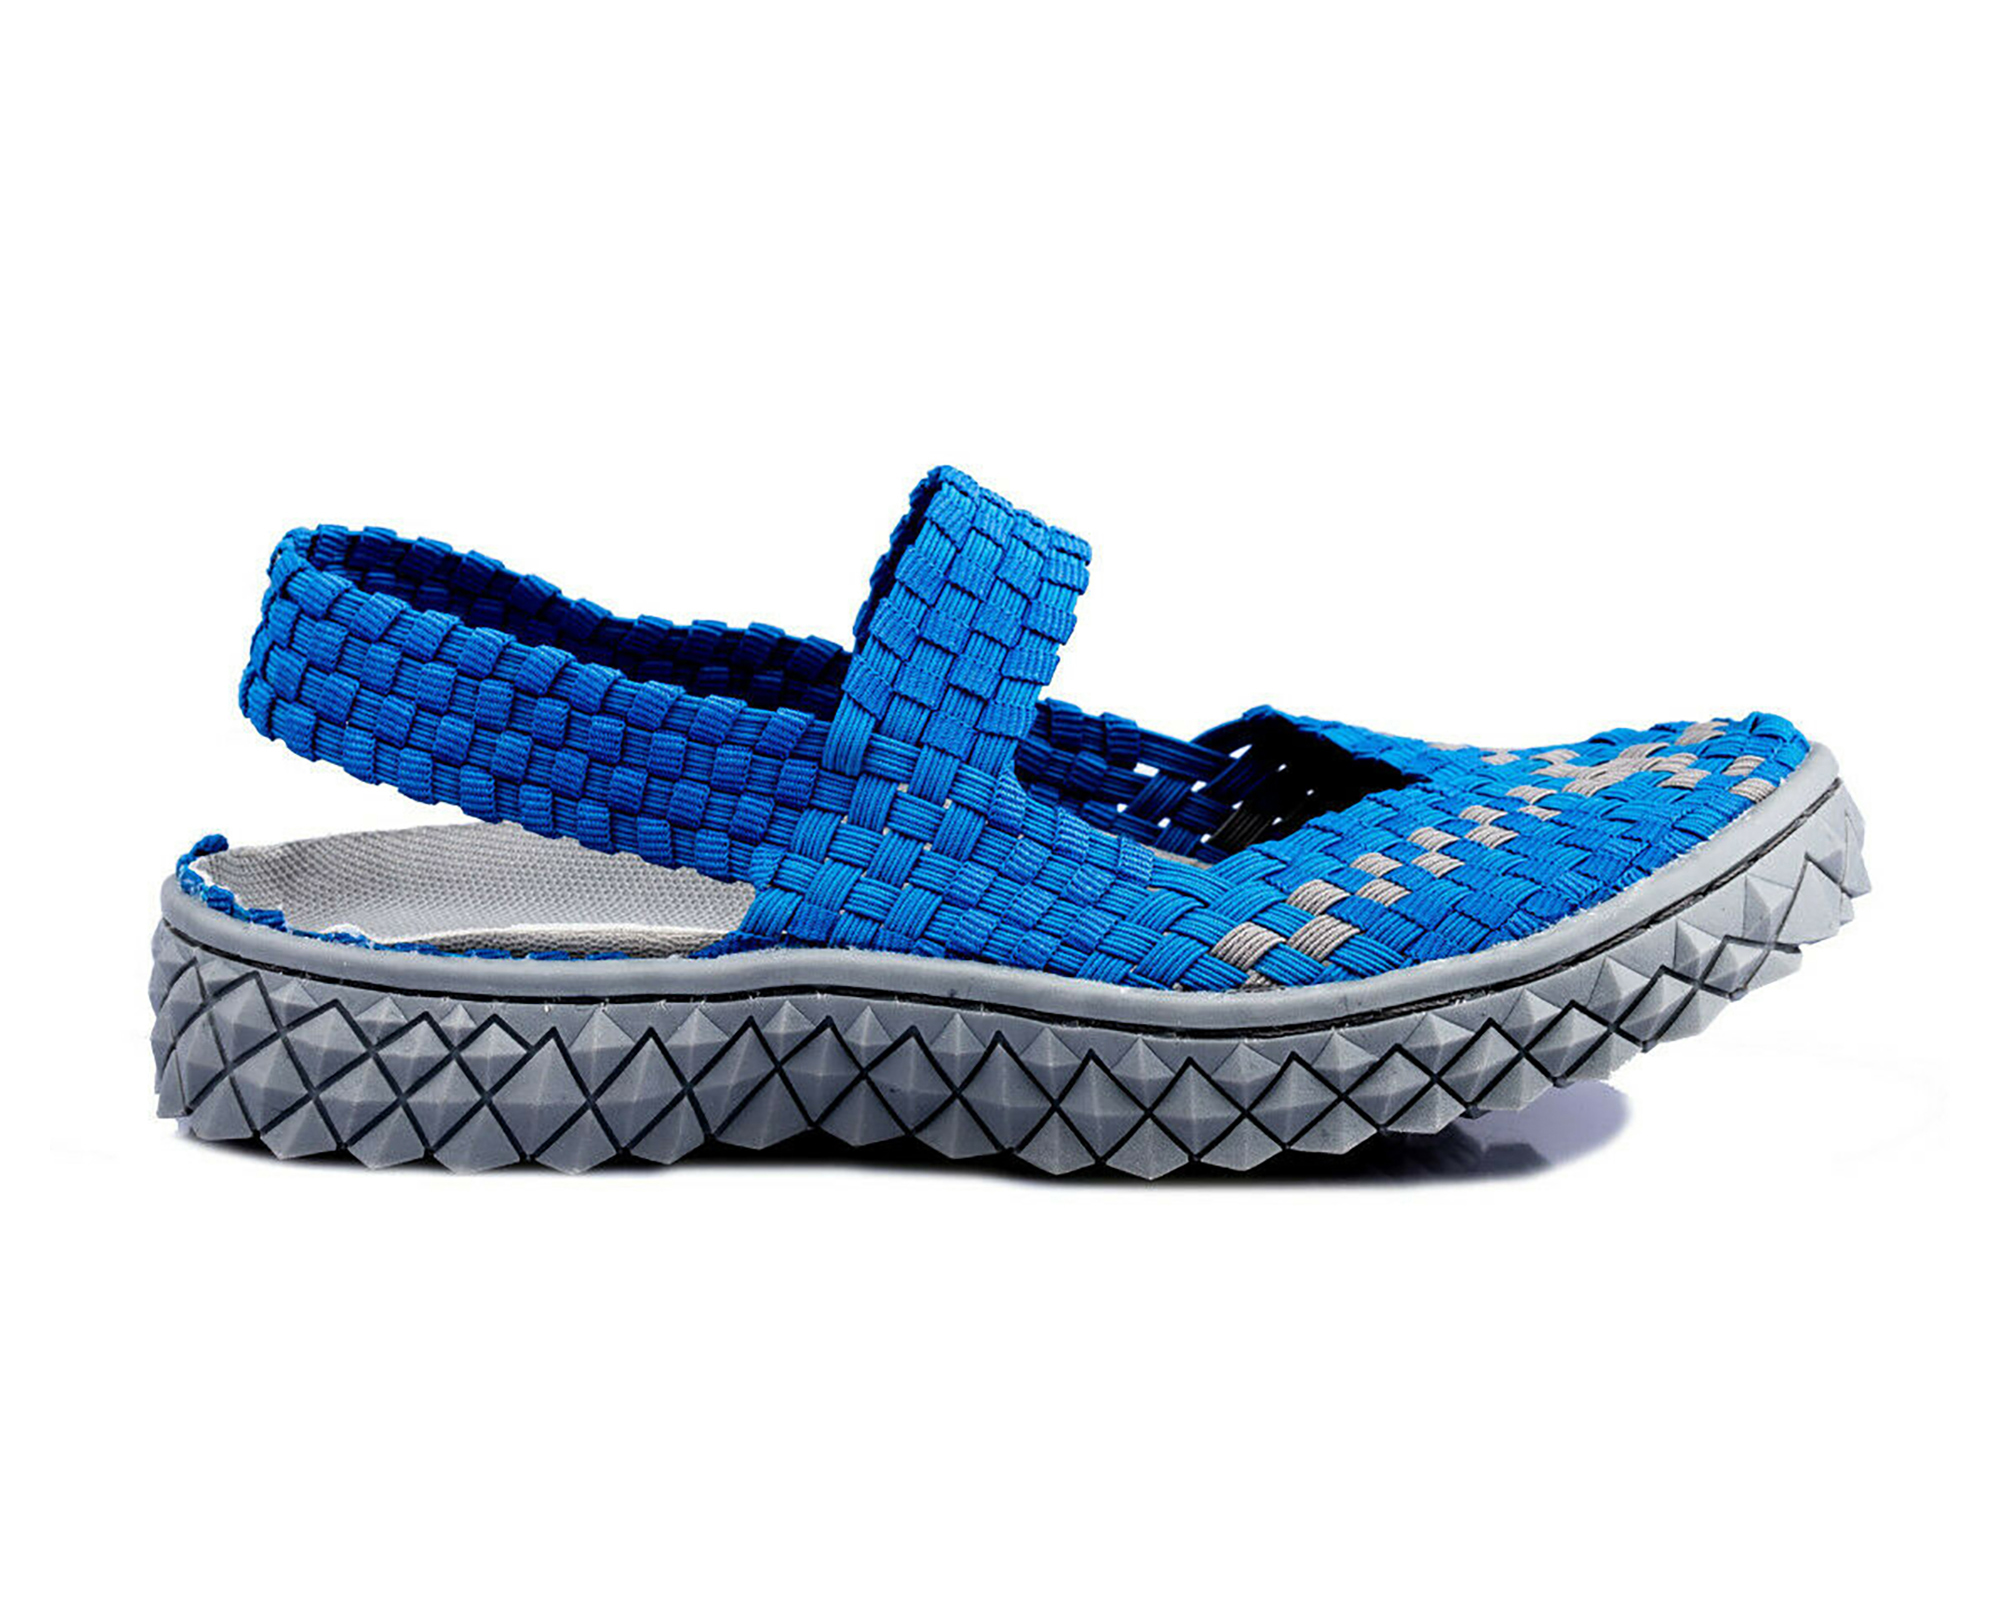 Damen Sandalen | TMA 140302 | komfortable Sandalen | Badelatschen | elastisch | blau | Größen 36 - 42